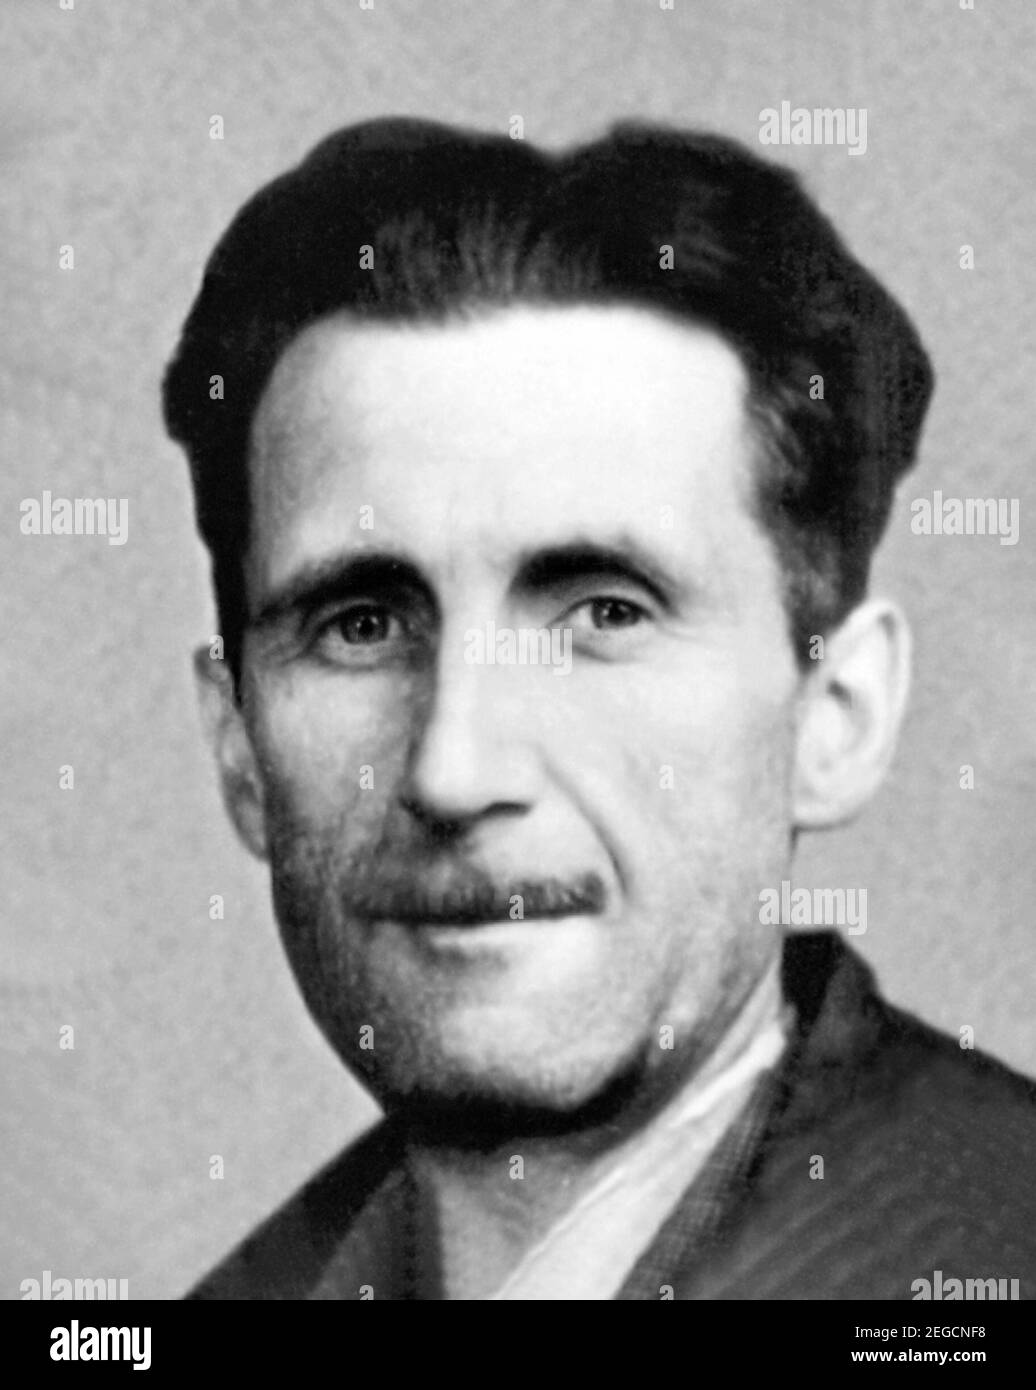 George Orwell. Porträt des englischen Schriftstellers und Journalisten Eric Arthur Blair ( 1903-1950) aus einem Presseausweis von 1943. Stockfoto